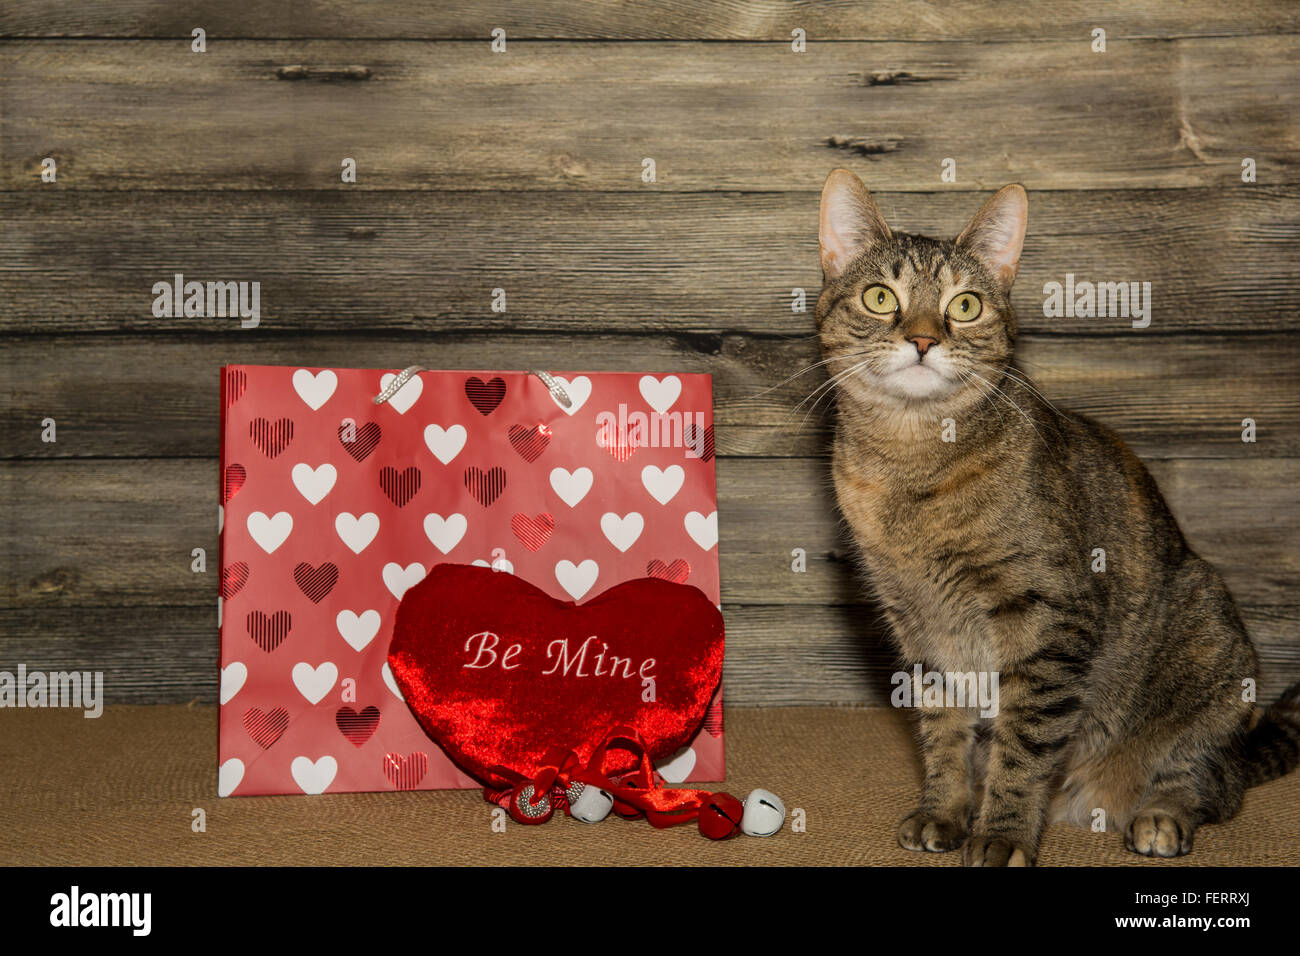 Gatto San Valentino Immagini e Fotos Stock - Alamy